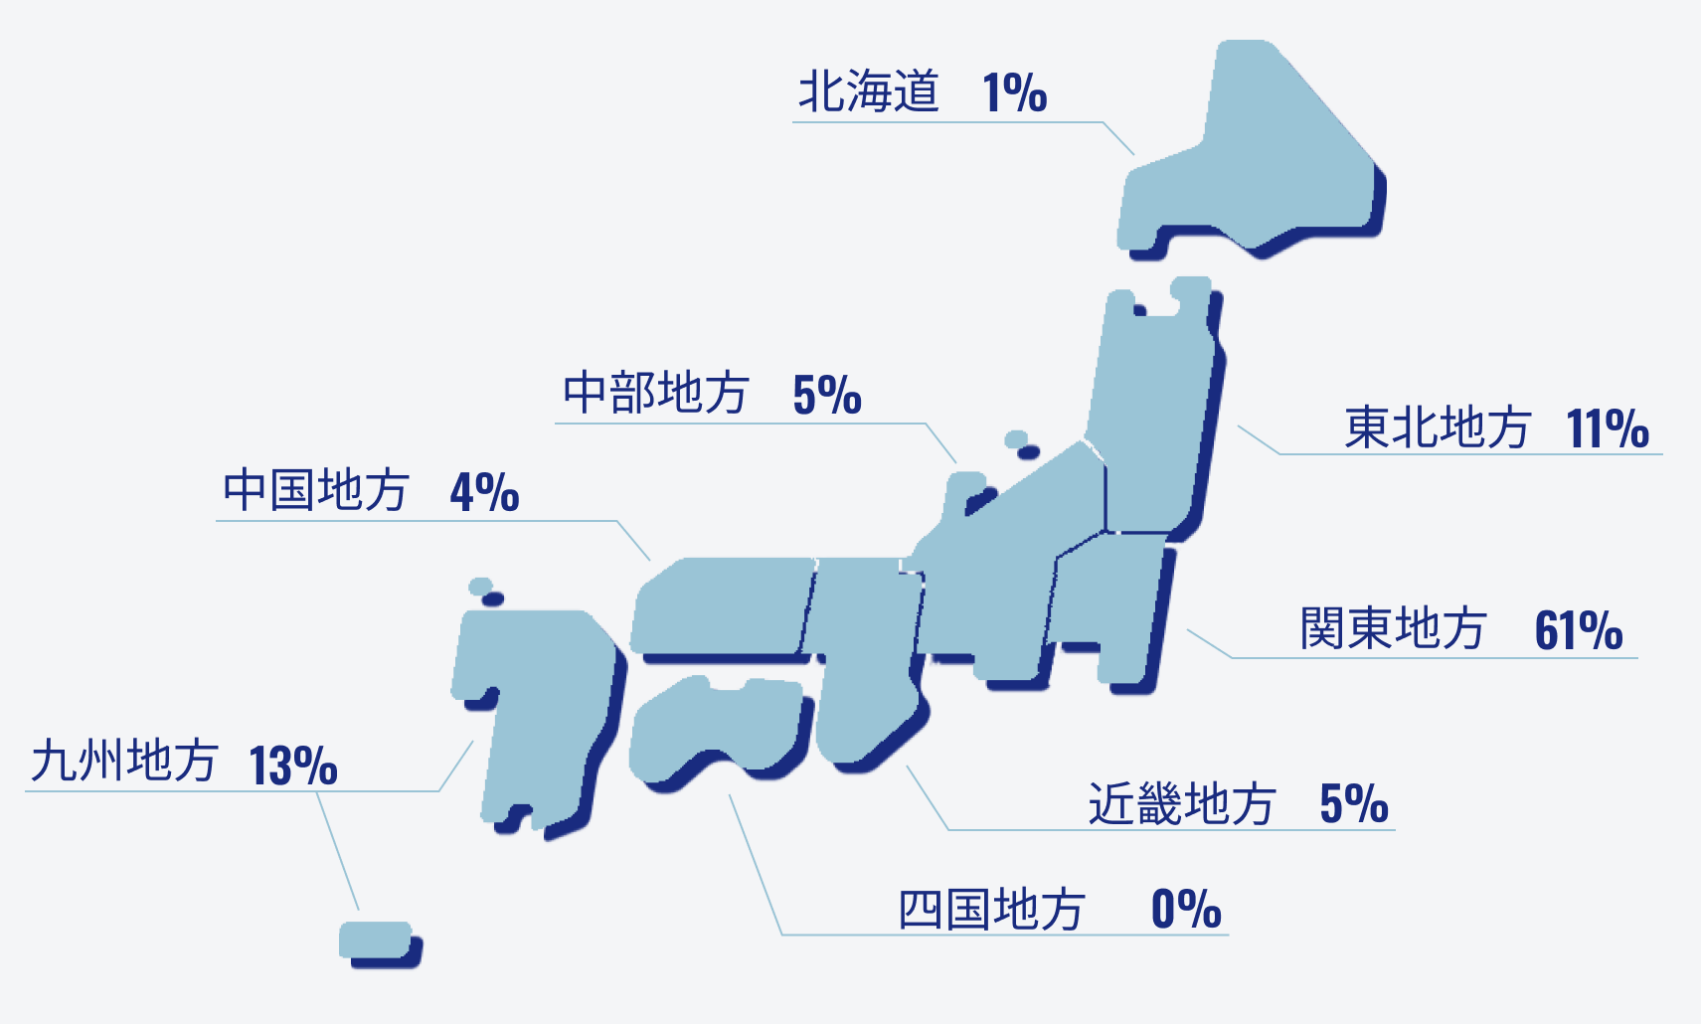 社員の出身地ごとの割合を示す地図です。北海道出身が1％、東北地方出身が11%、関東地方出身が61%、中部地方出身が5%、近畿地方出身が5％、中国地方出身が4％、四国地方出身が0%、九州地方出身が13%という結果になりました。